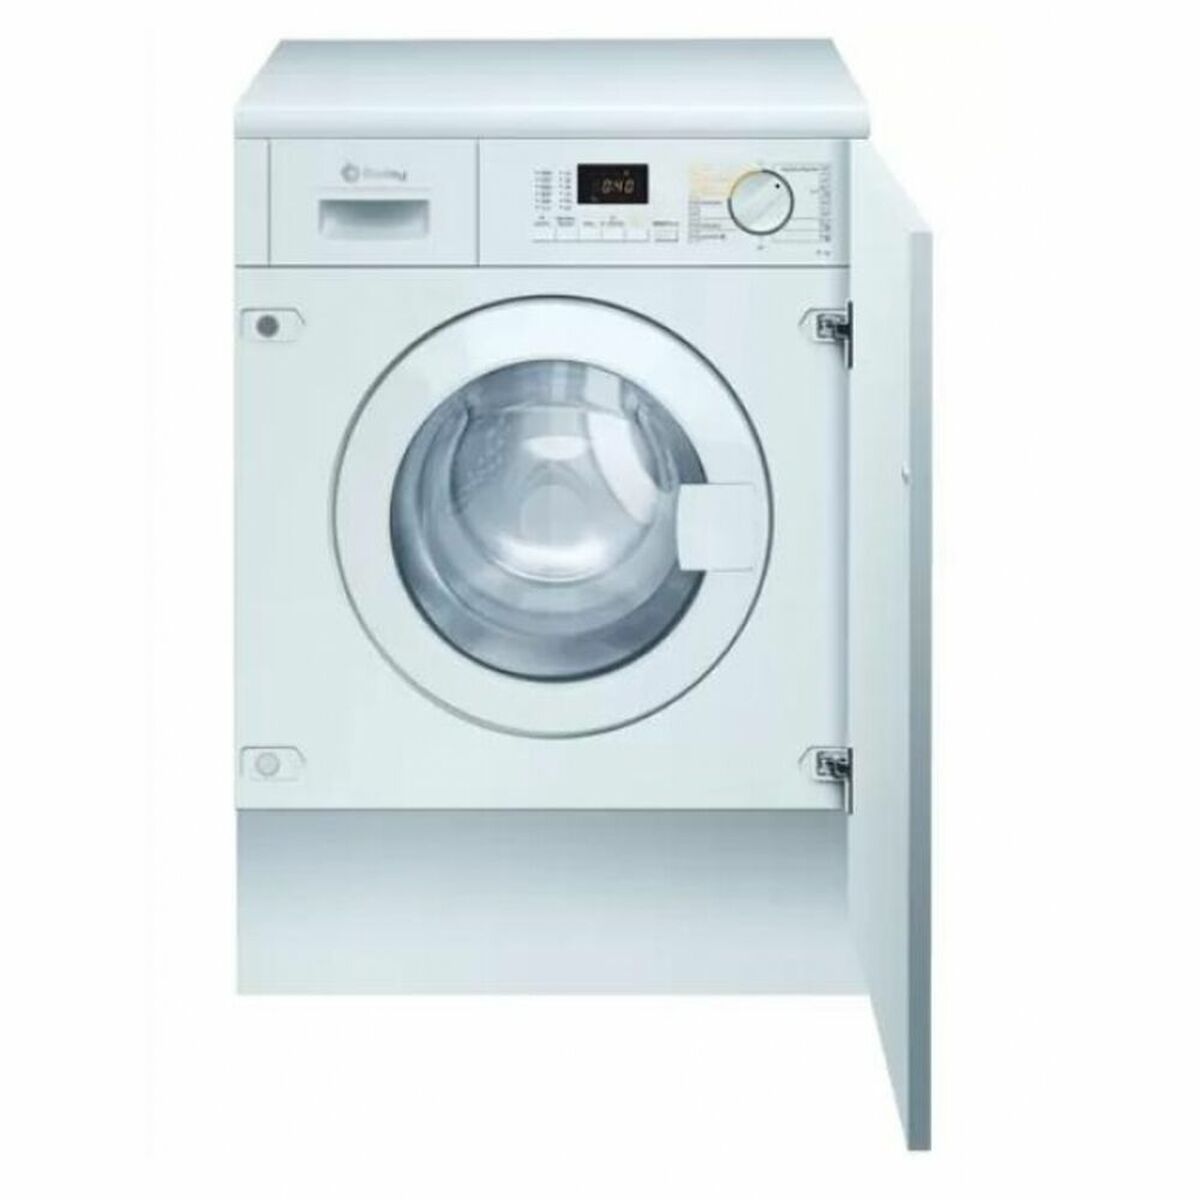 Washer - Dryer Balay 3TW773B 7kg / 4kg White 1200 rpm